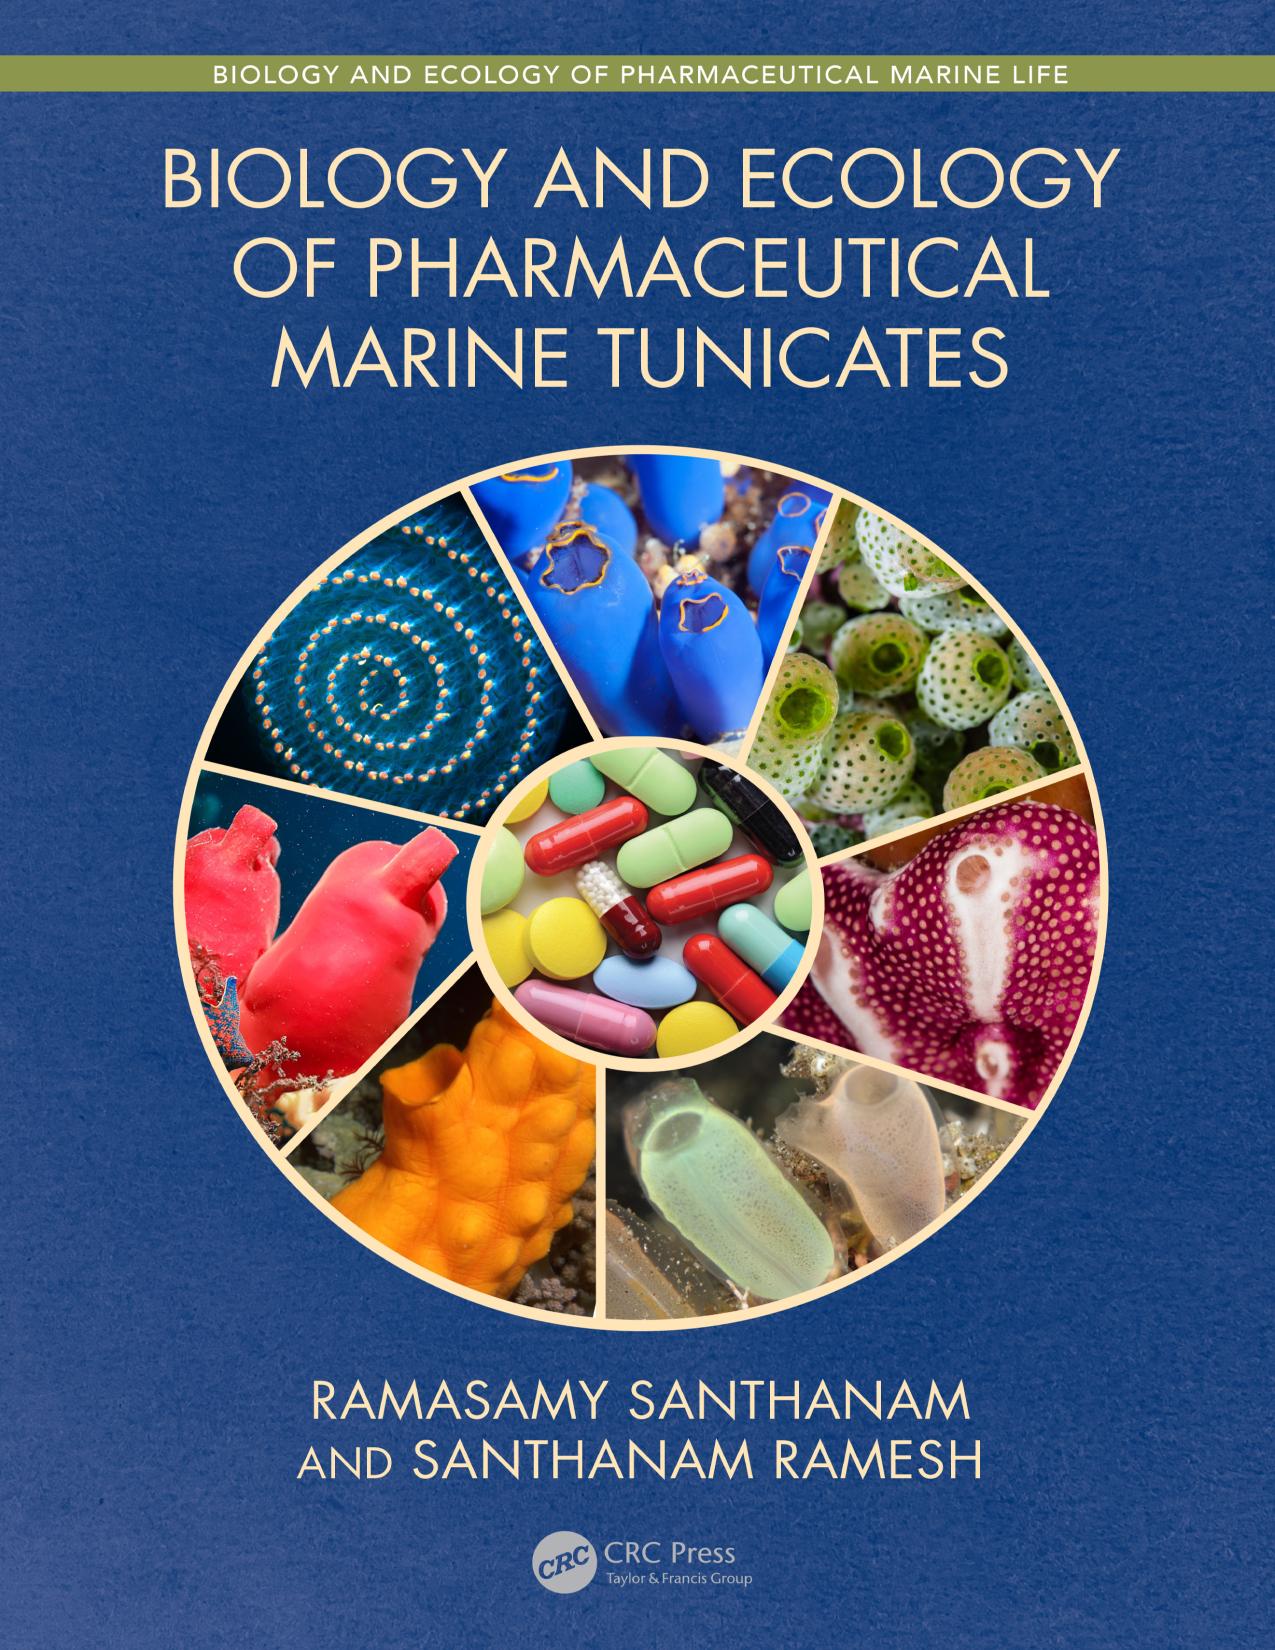 Biology and Ecology of Pharmaceutical Marine Tunicates